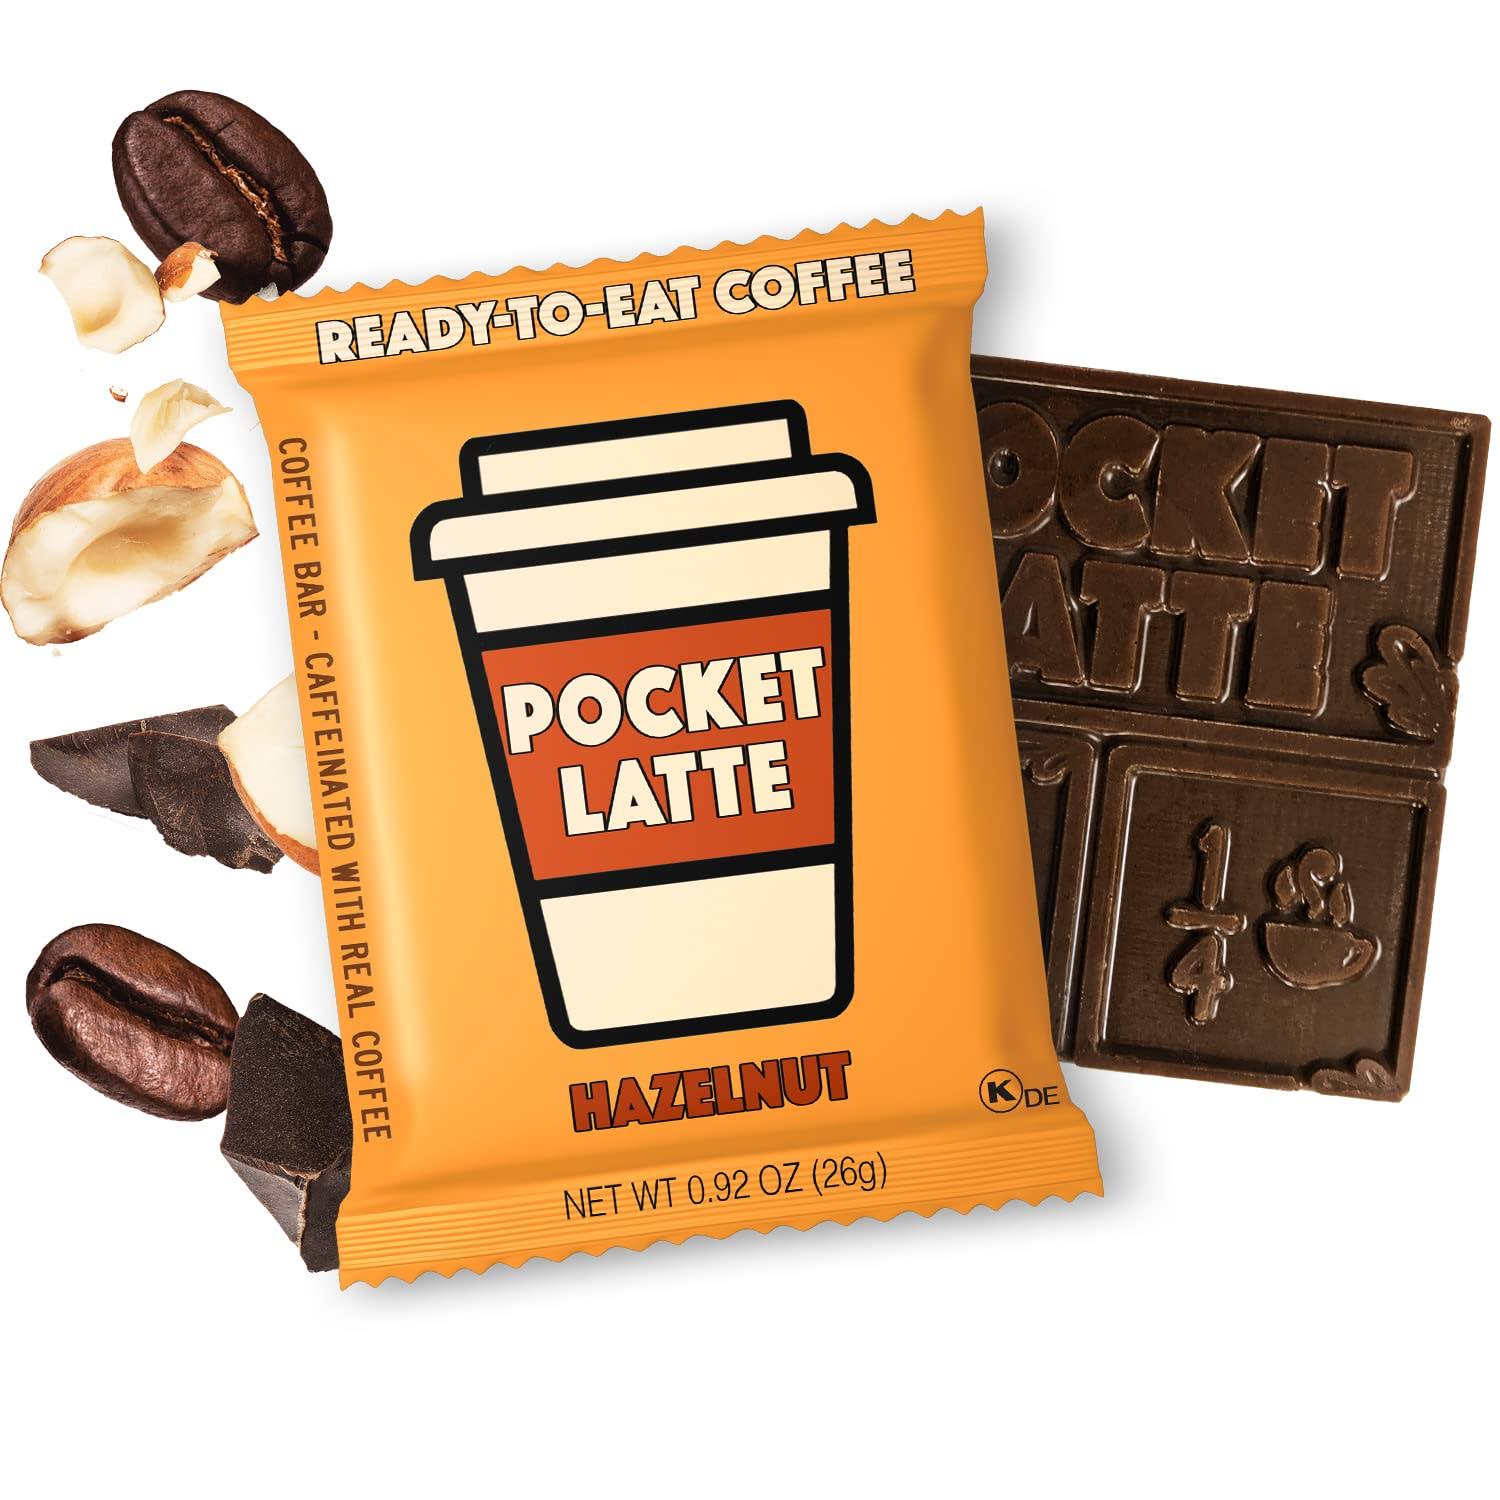 Pocket Latte Coffee Bar, Hazelnut - 0.92 oz